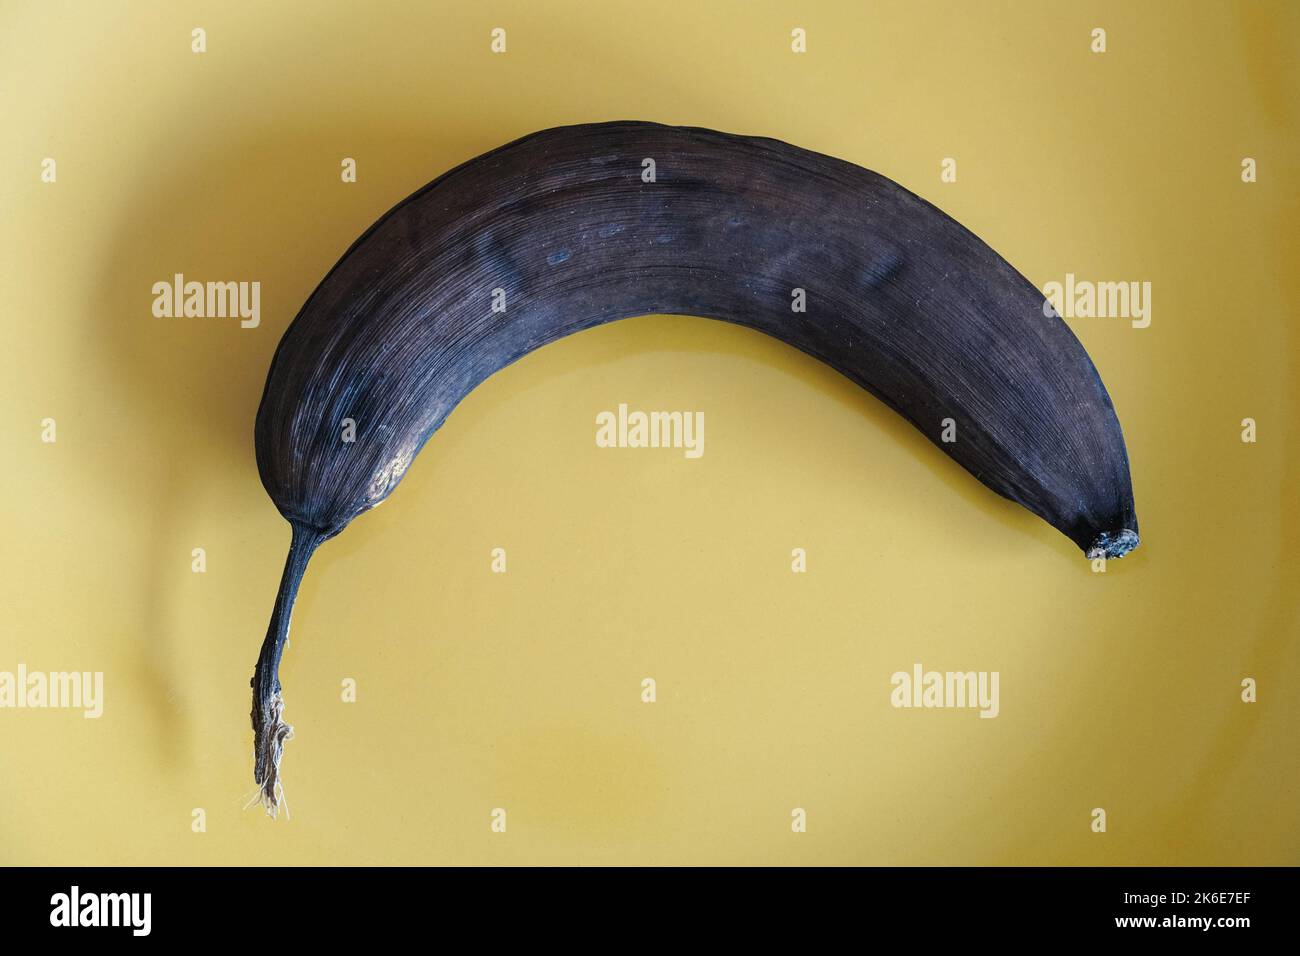 Old single overripe banana peel turned black Stock Photo